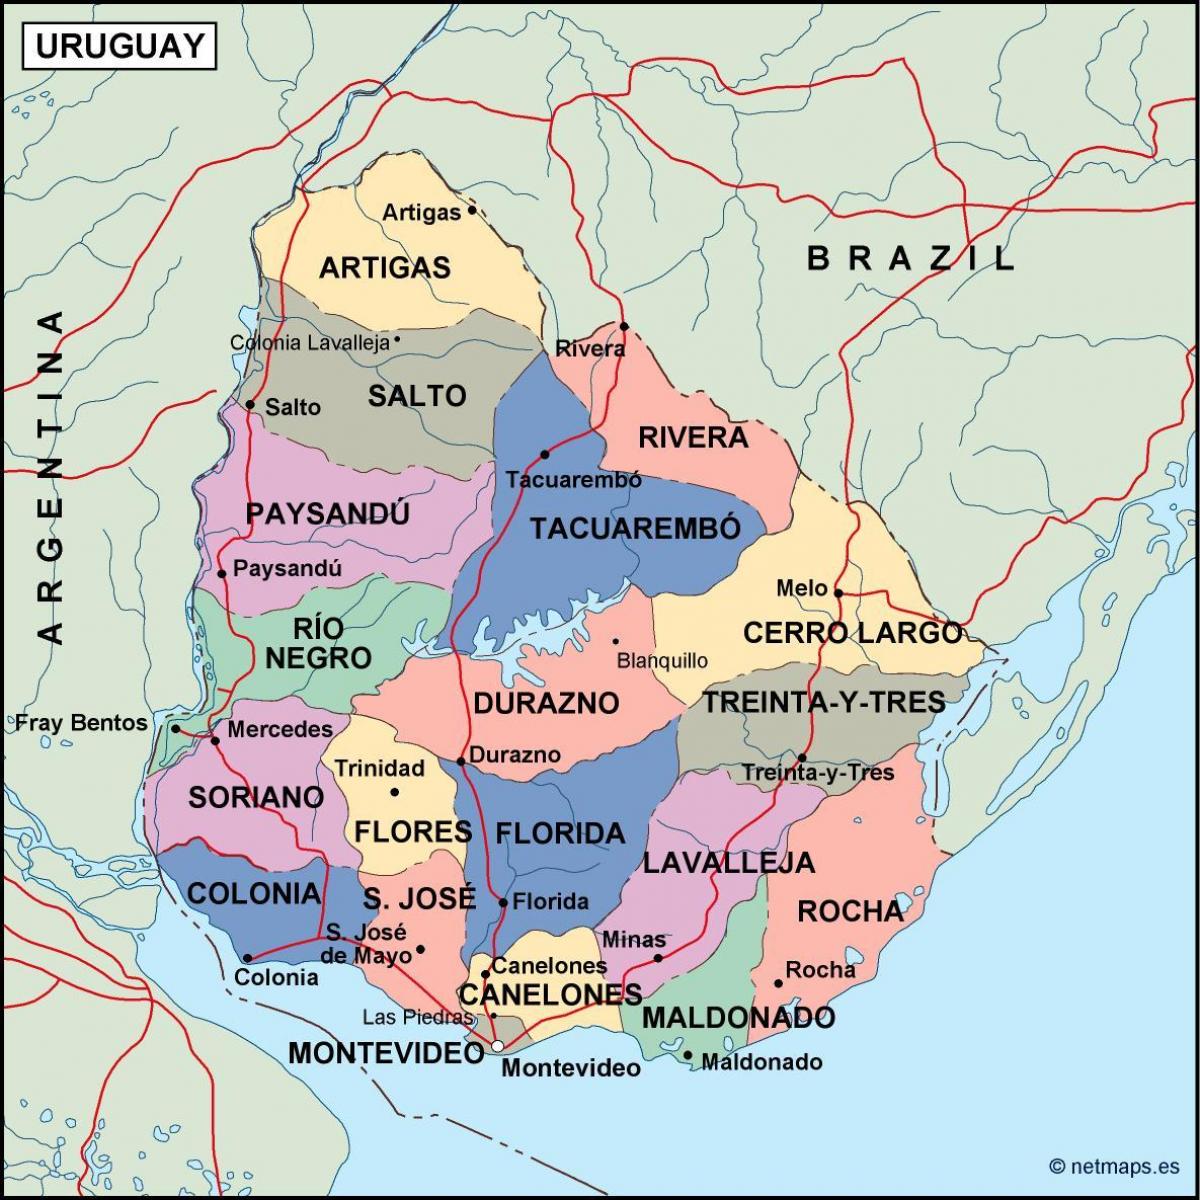 Mappa di maldonado Uruguay